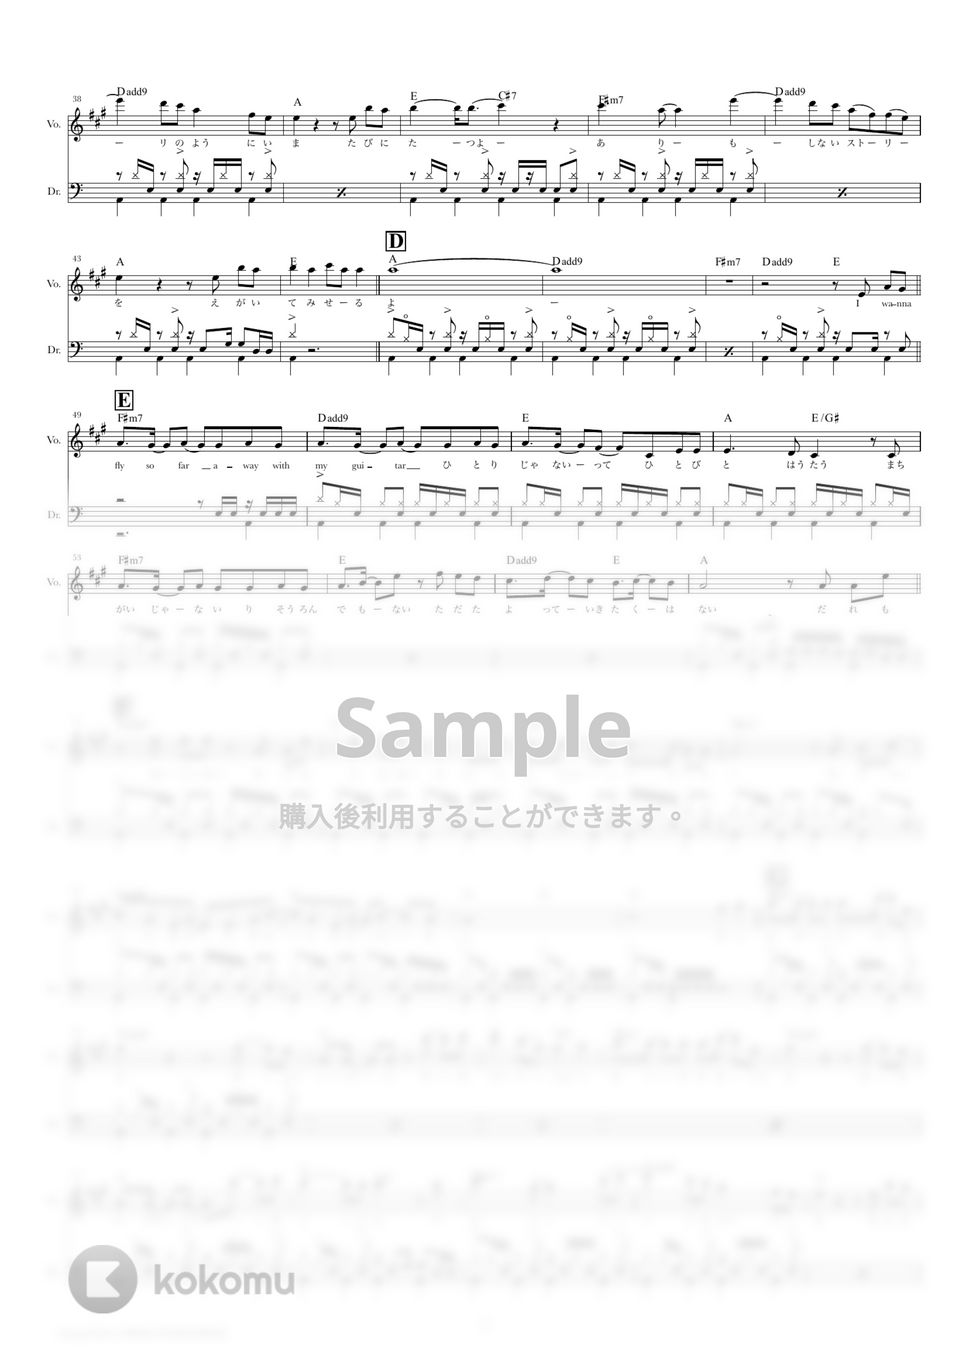 ALEXANDROS - ワタリドリ (ドラムスコア・歌詞・コード付き) by TRIAD GUITAR SCHOOL